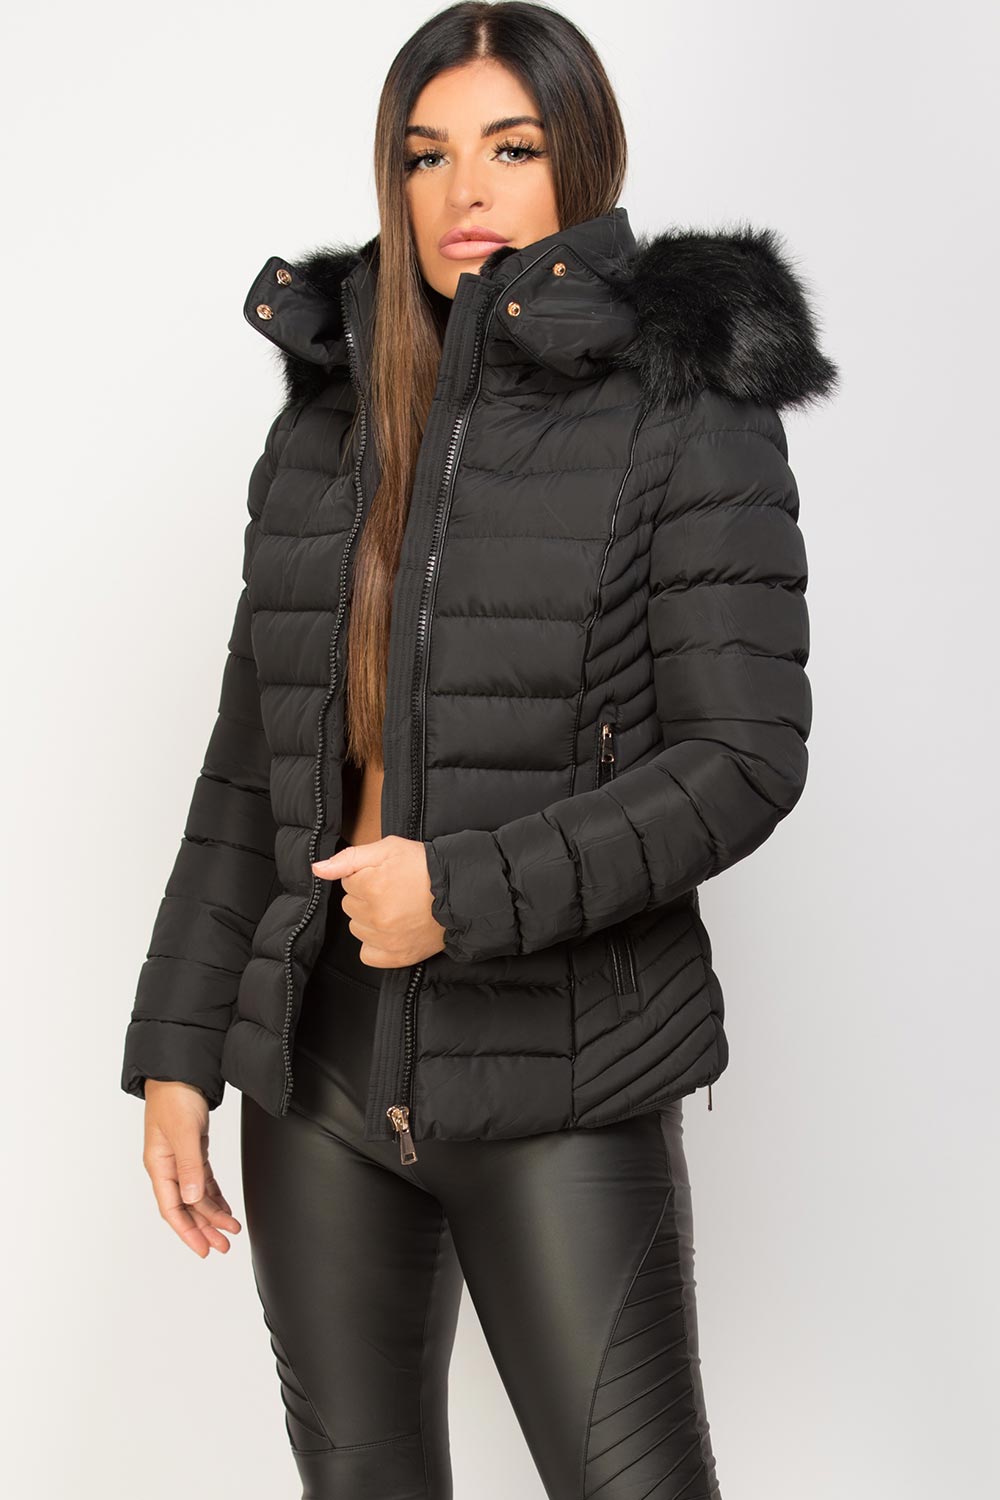 Black Jacket With Fur Hood ~ Calvin Klein Water-resistant Hooded Faux ...